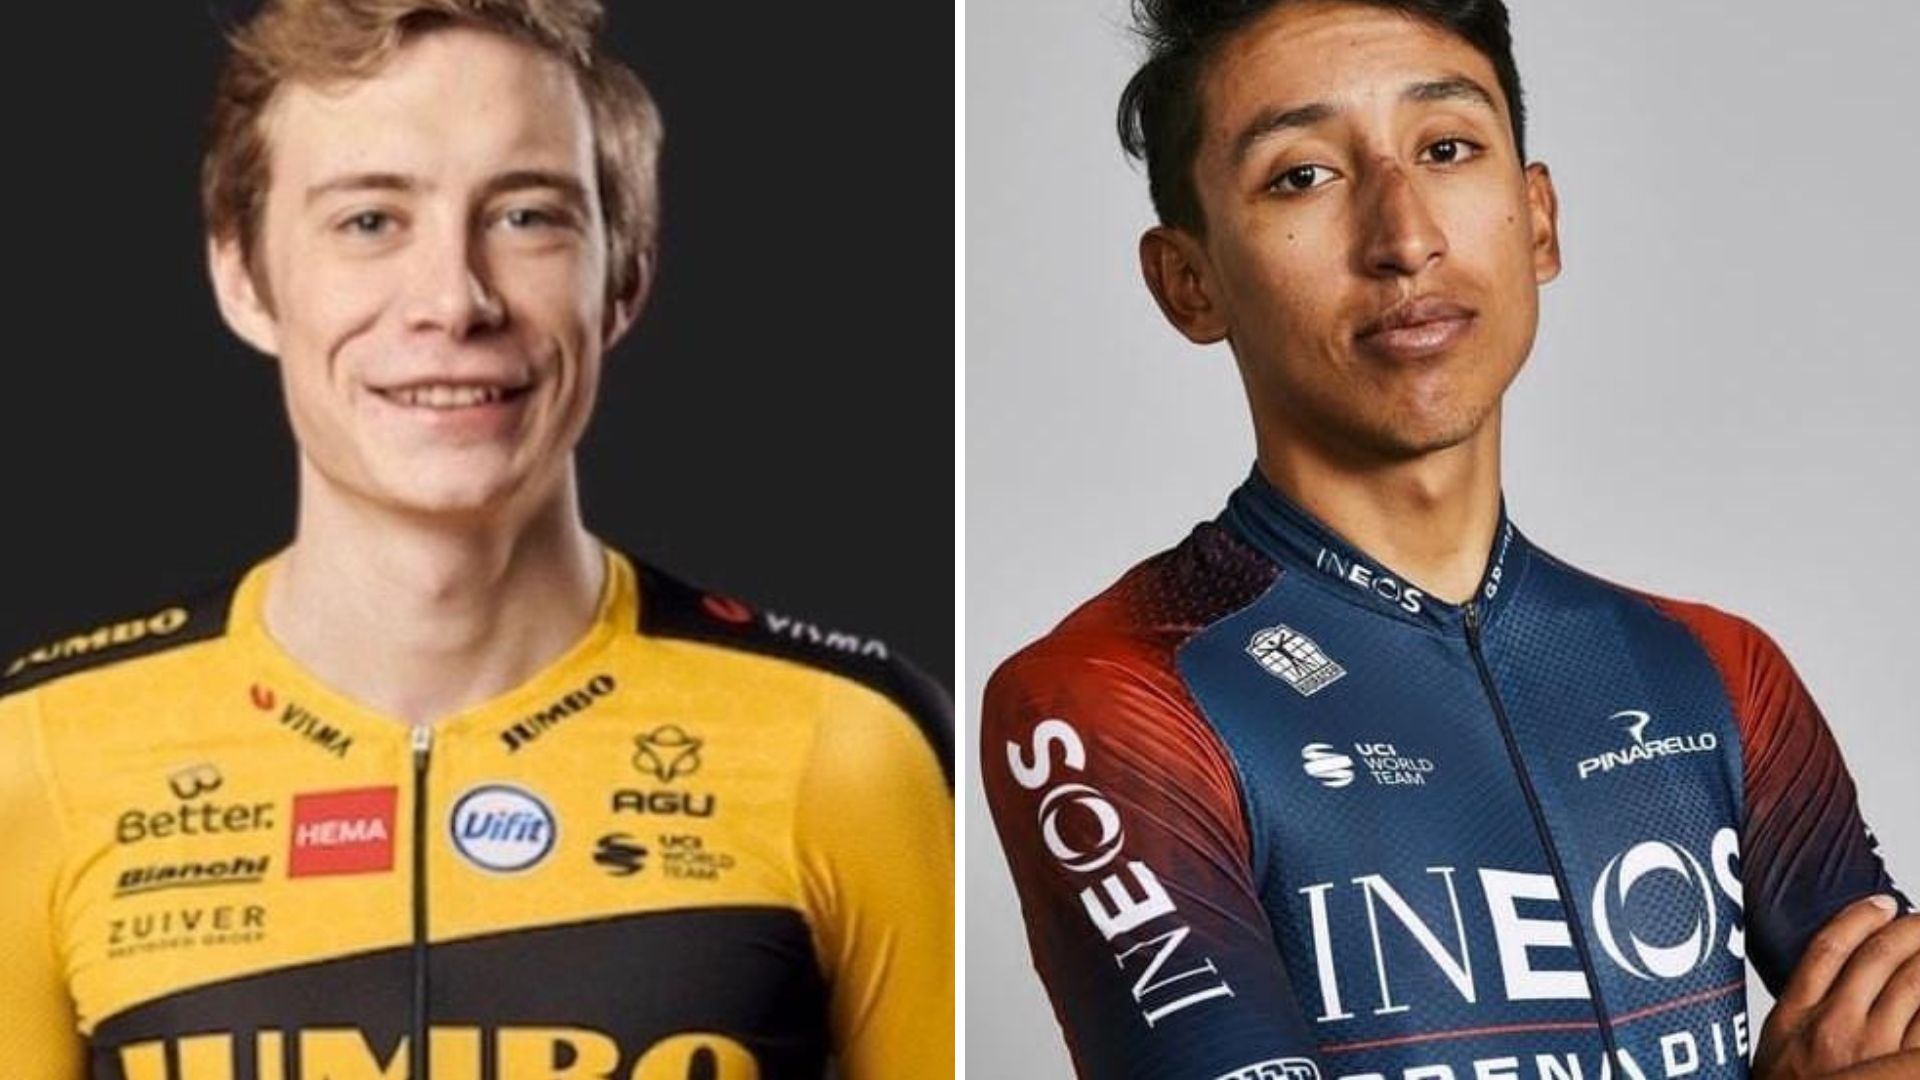 Jonas Vingegaard, campeón del Tour de Francia 2022 y Egan Bernal. 

Fotos tomadas de los perfiles de los corredores  en Instagram.